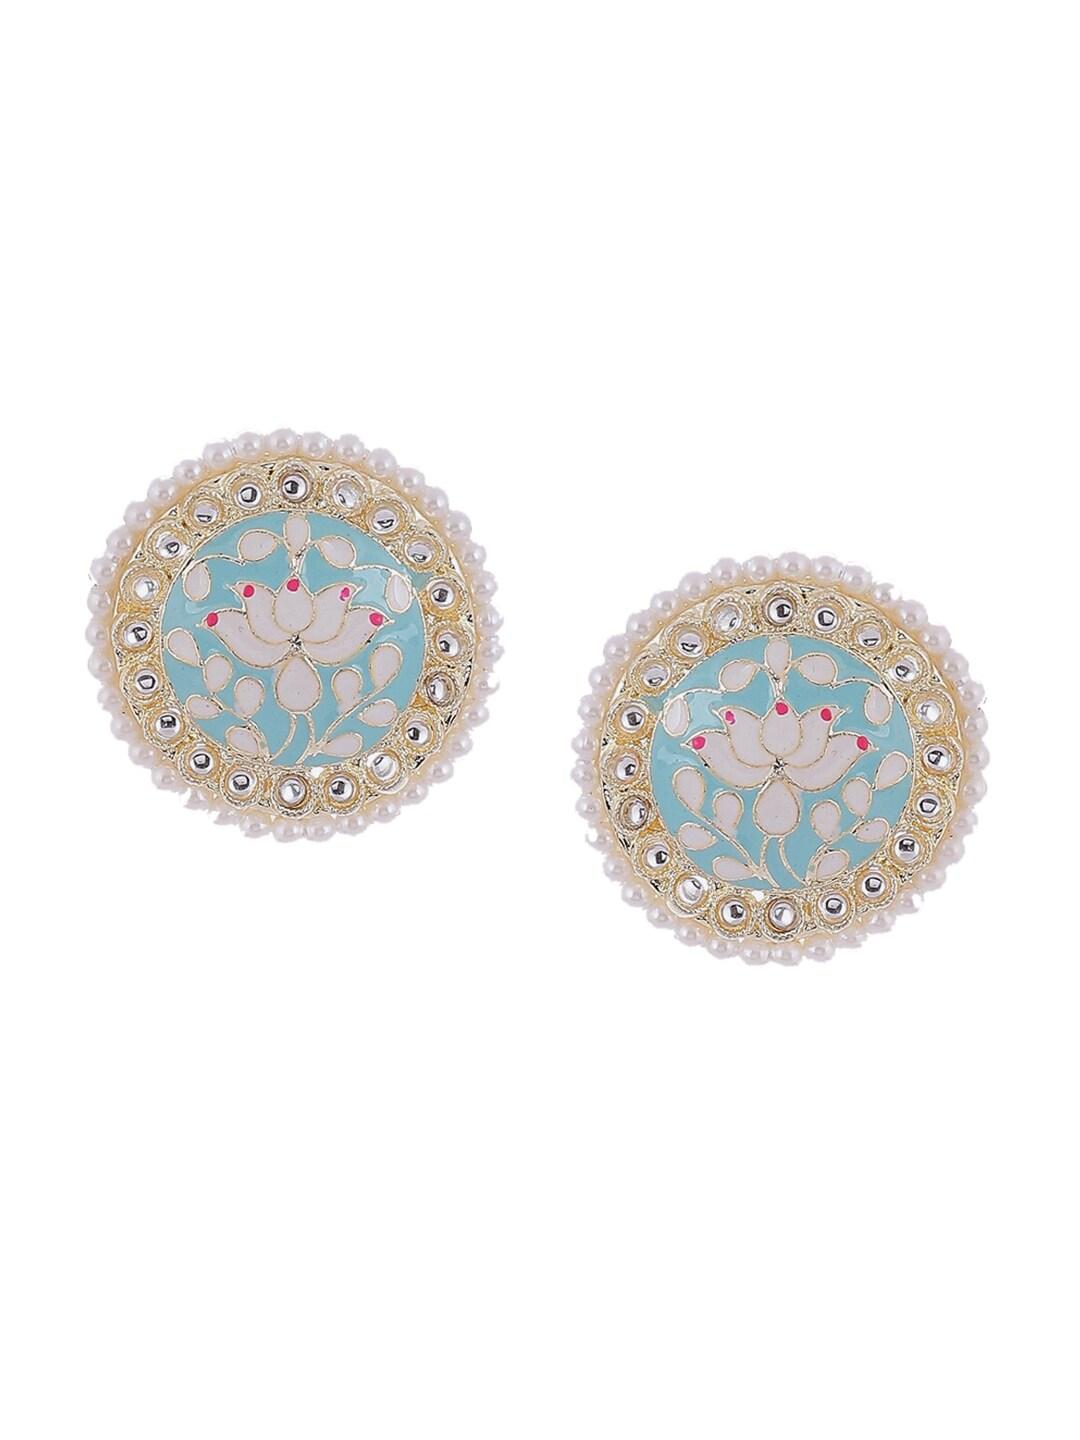 rangriti blue pearls studded meenakari contemporary studs earrings